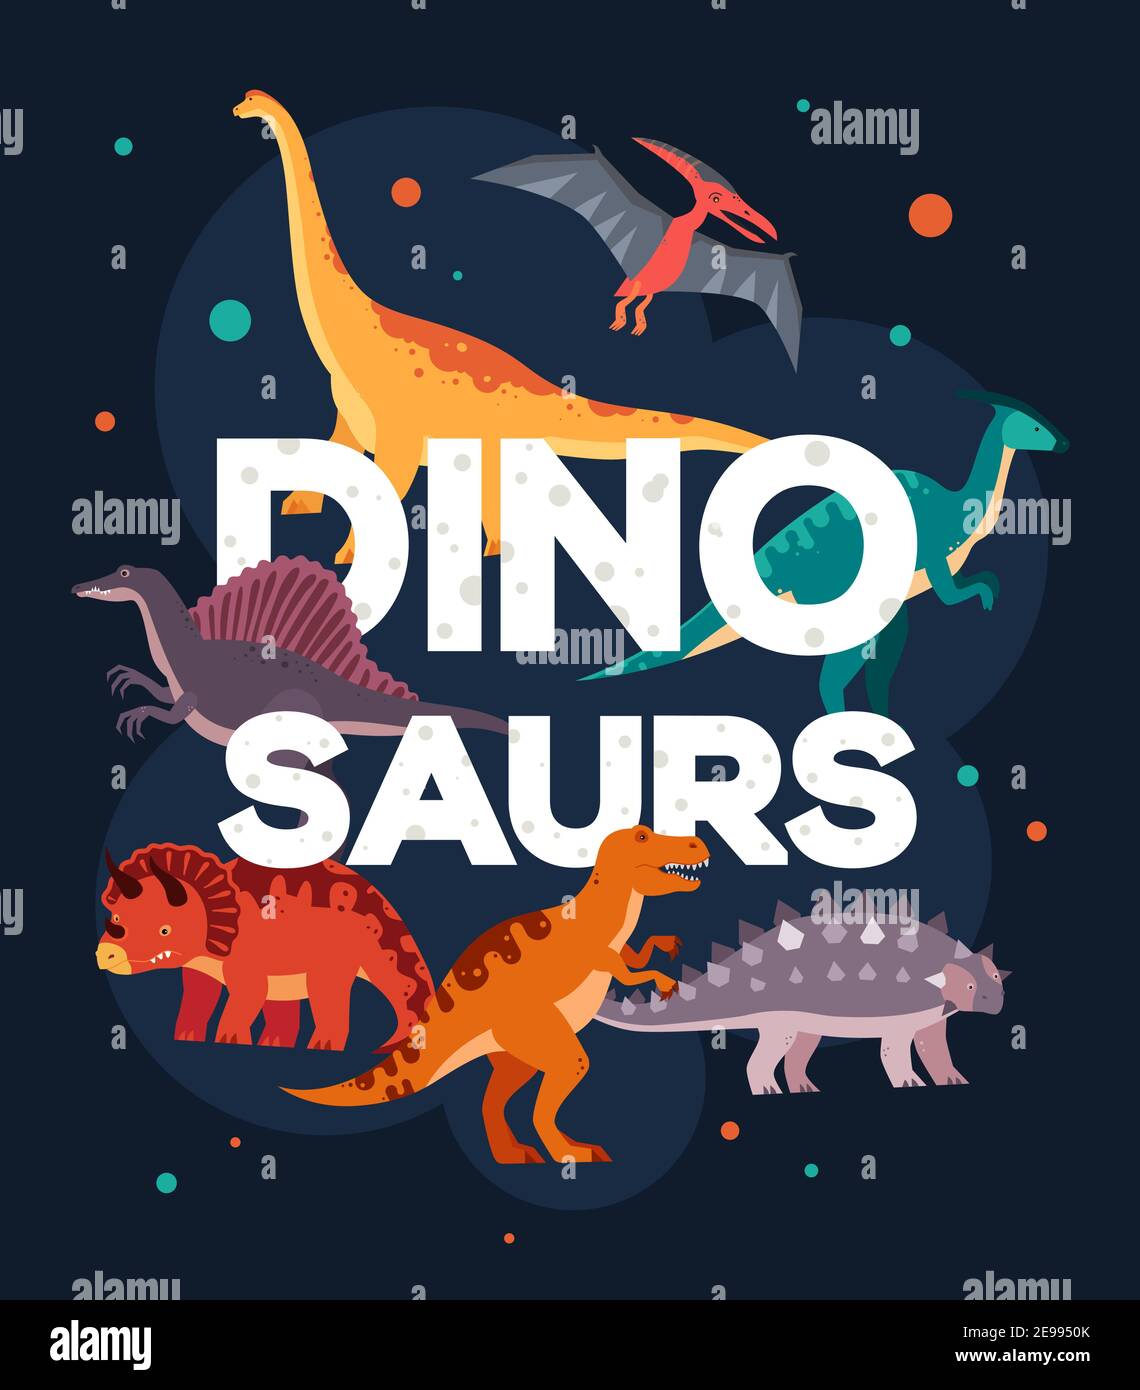 Différents dinosaures - affiche colorée de style plat. Pteranodon, brachiosaurus, ankylosaurus, T-rex, triceratops, spinosaurus, parasaurolophus ima Illustration de Vecteur